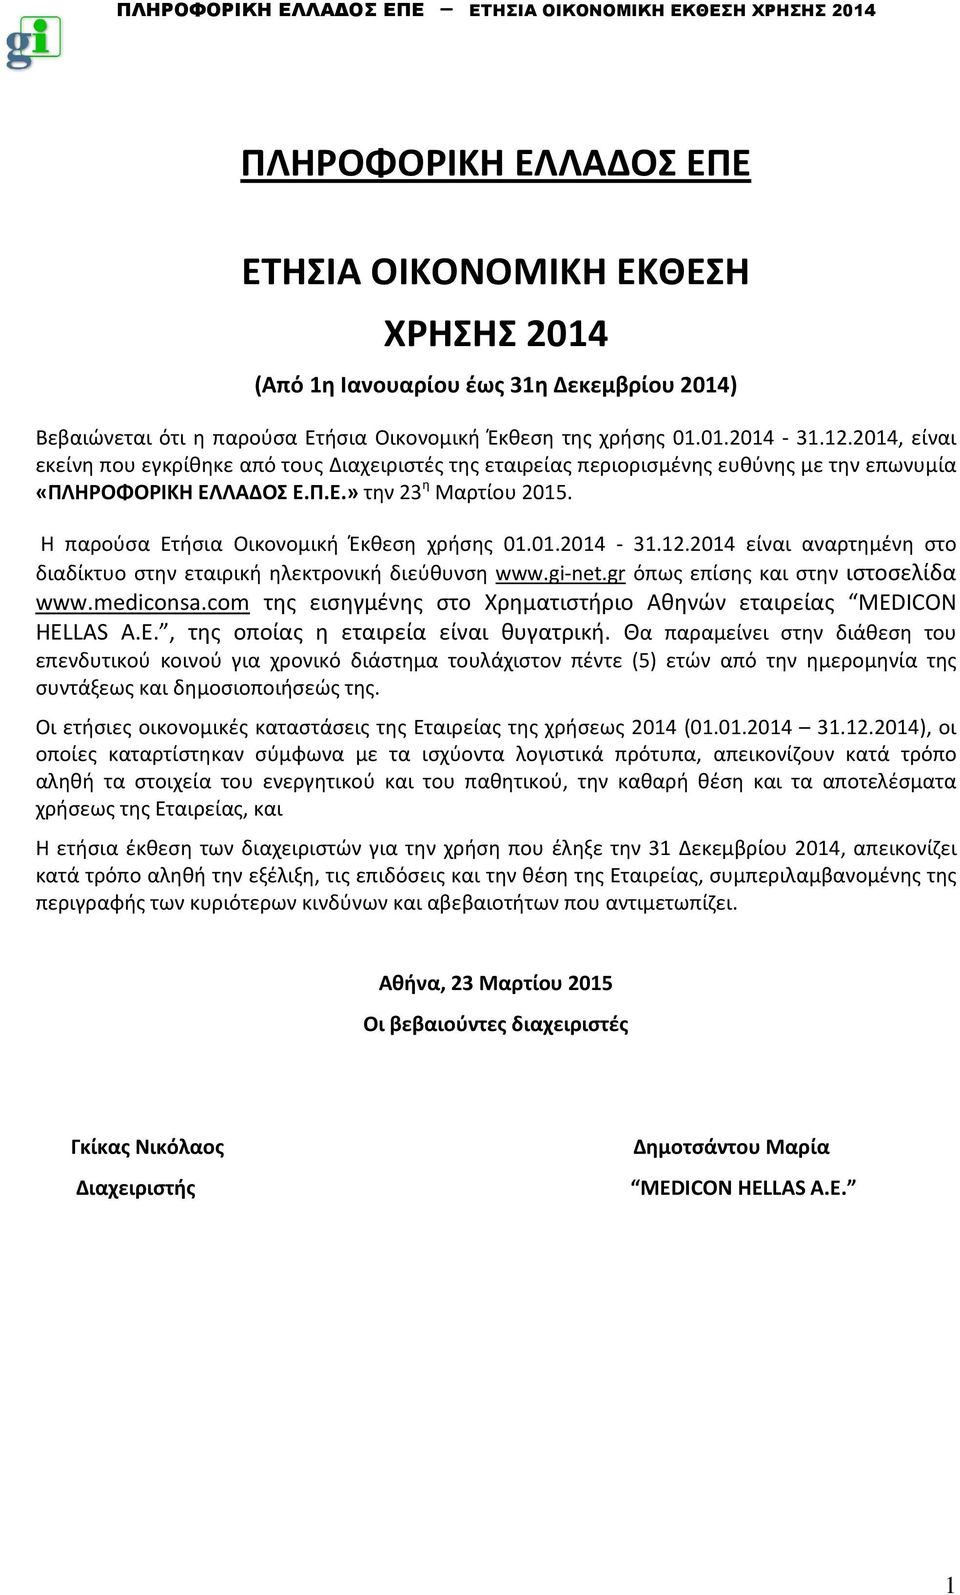 Η παρούσα Ετήσια Οικονομική Έκθεση χρήσης 01.01.2014-31.12.2014 είναι αναρτημένη στο διαδίκτυο στην εταιρική ηλεκτρονική διεύθυνση www.gi-net.gr όπως επίσης και στην ιστοσελίδα www.mediconsa.